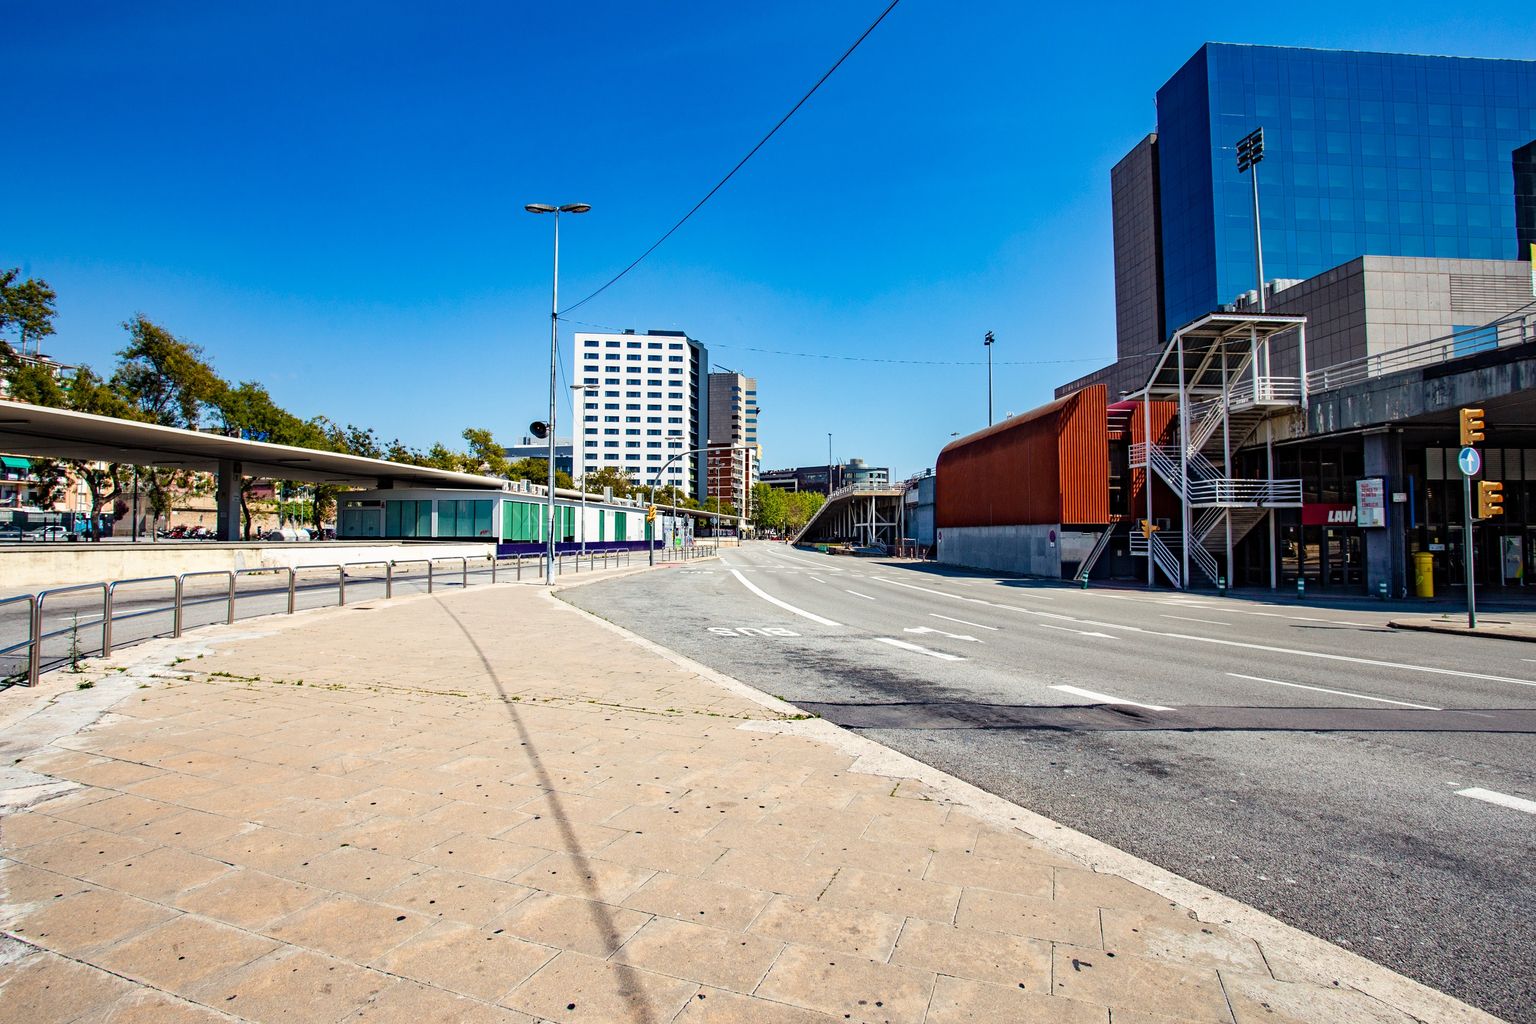 Estació d’autobusos de Sants Estació sense viatgers ni autobusos. Districte de Sants-Montjuïc. Barri de Sants.